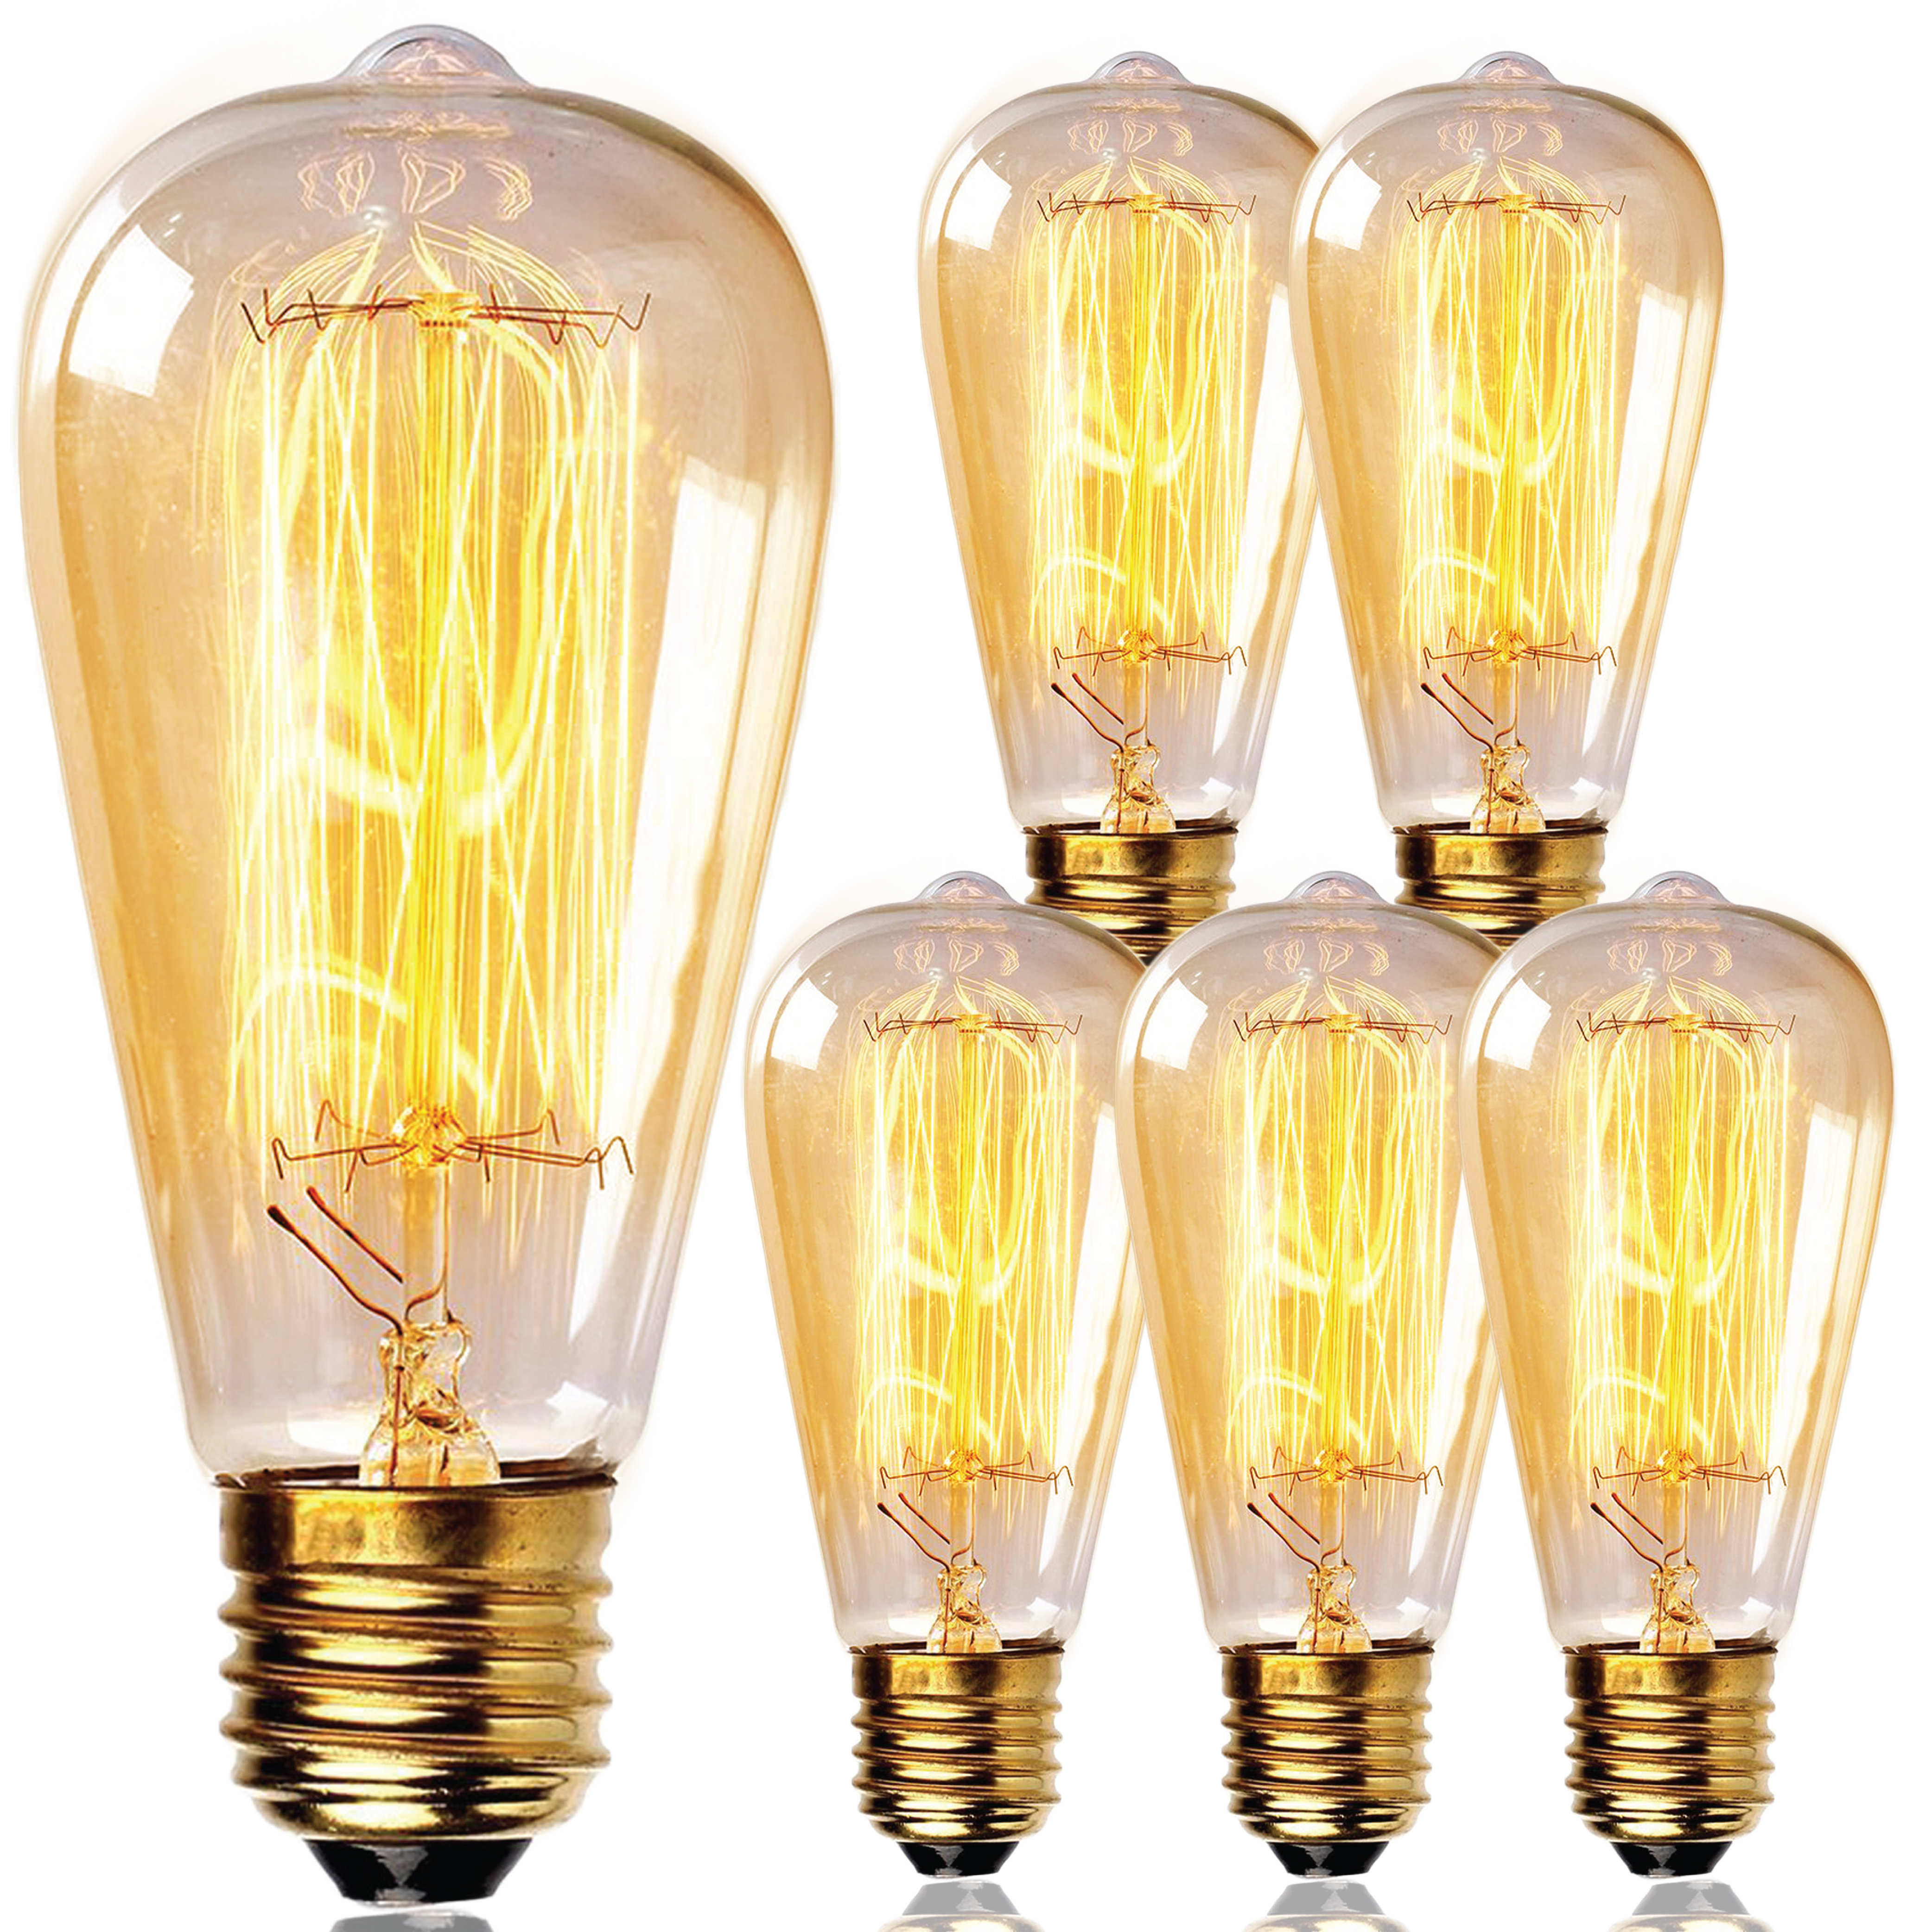 Newhouse Lighting 60 Watt, ST64 Incandescent, Dimmable Light Bulb, Warm Amber (2700K) (Standard) Base Reviews | Wayfair